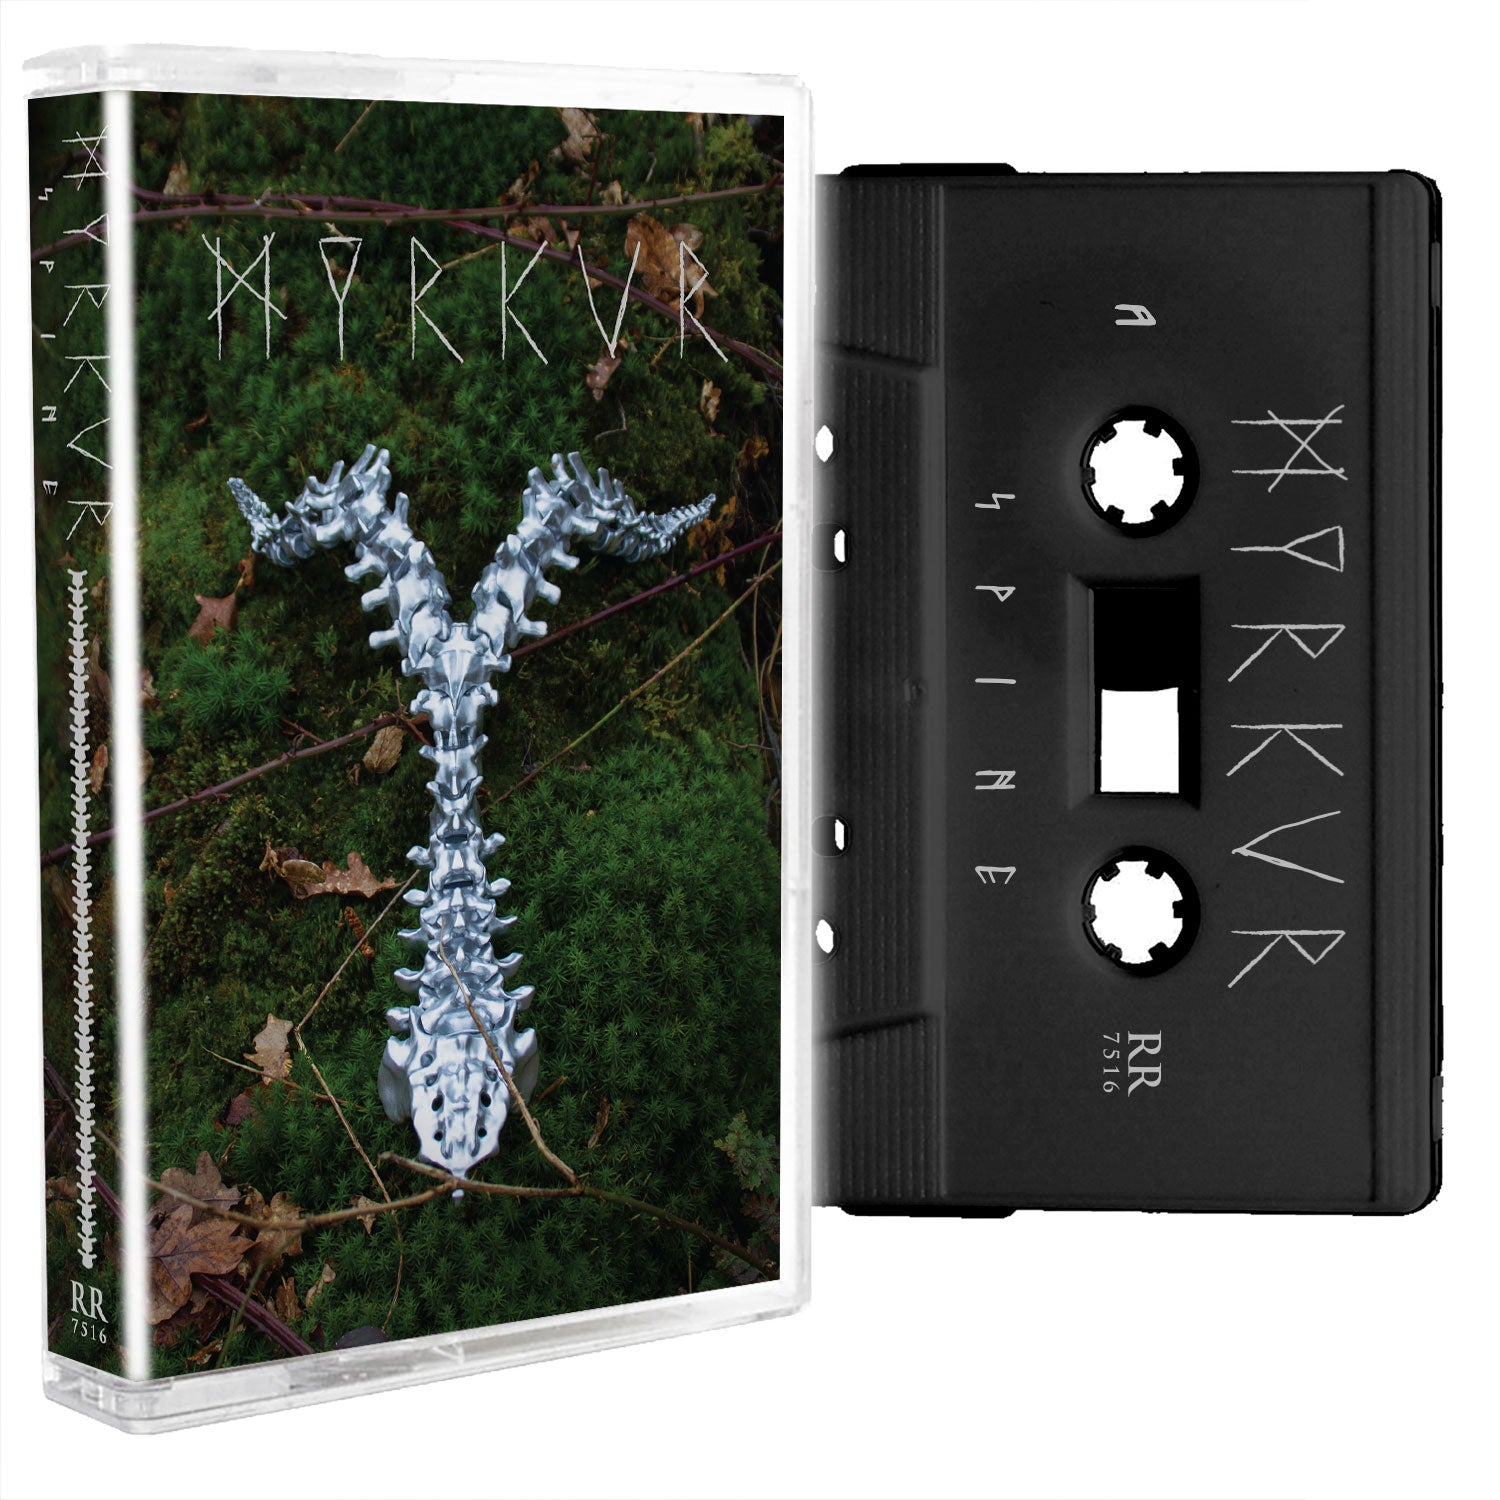 Myrkur "Spine" Cassette